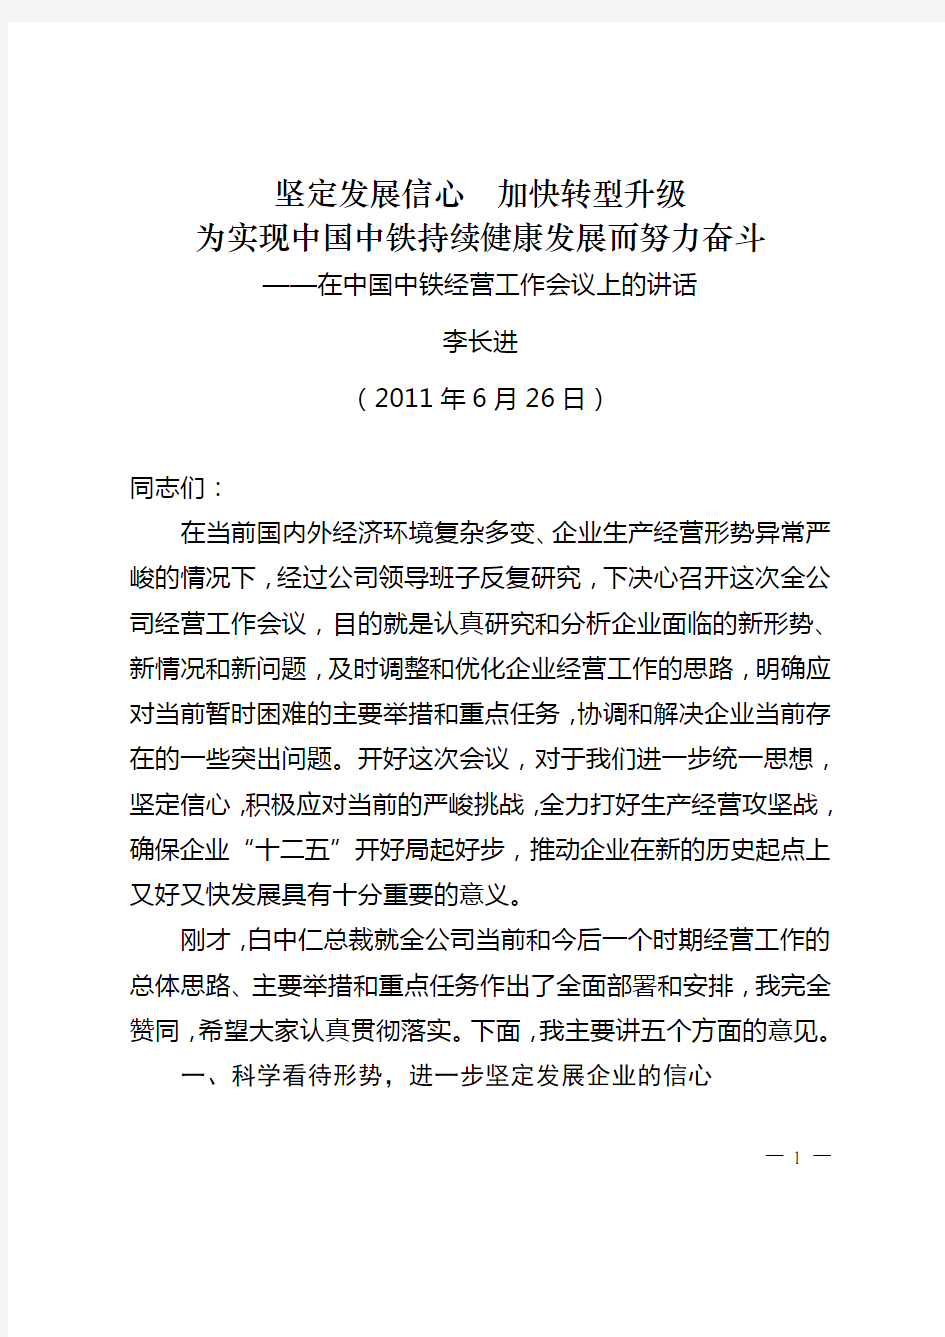 李长进董事长在中国中铁经营工作会议上的讲话(印刷稿)